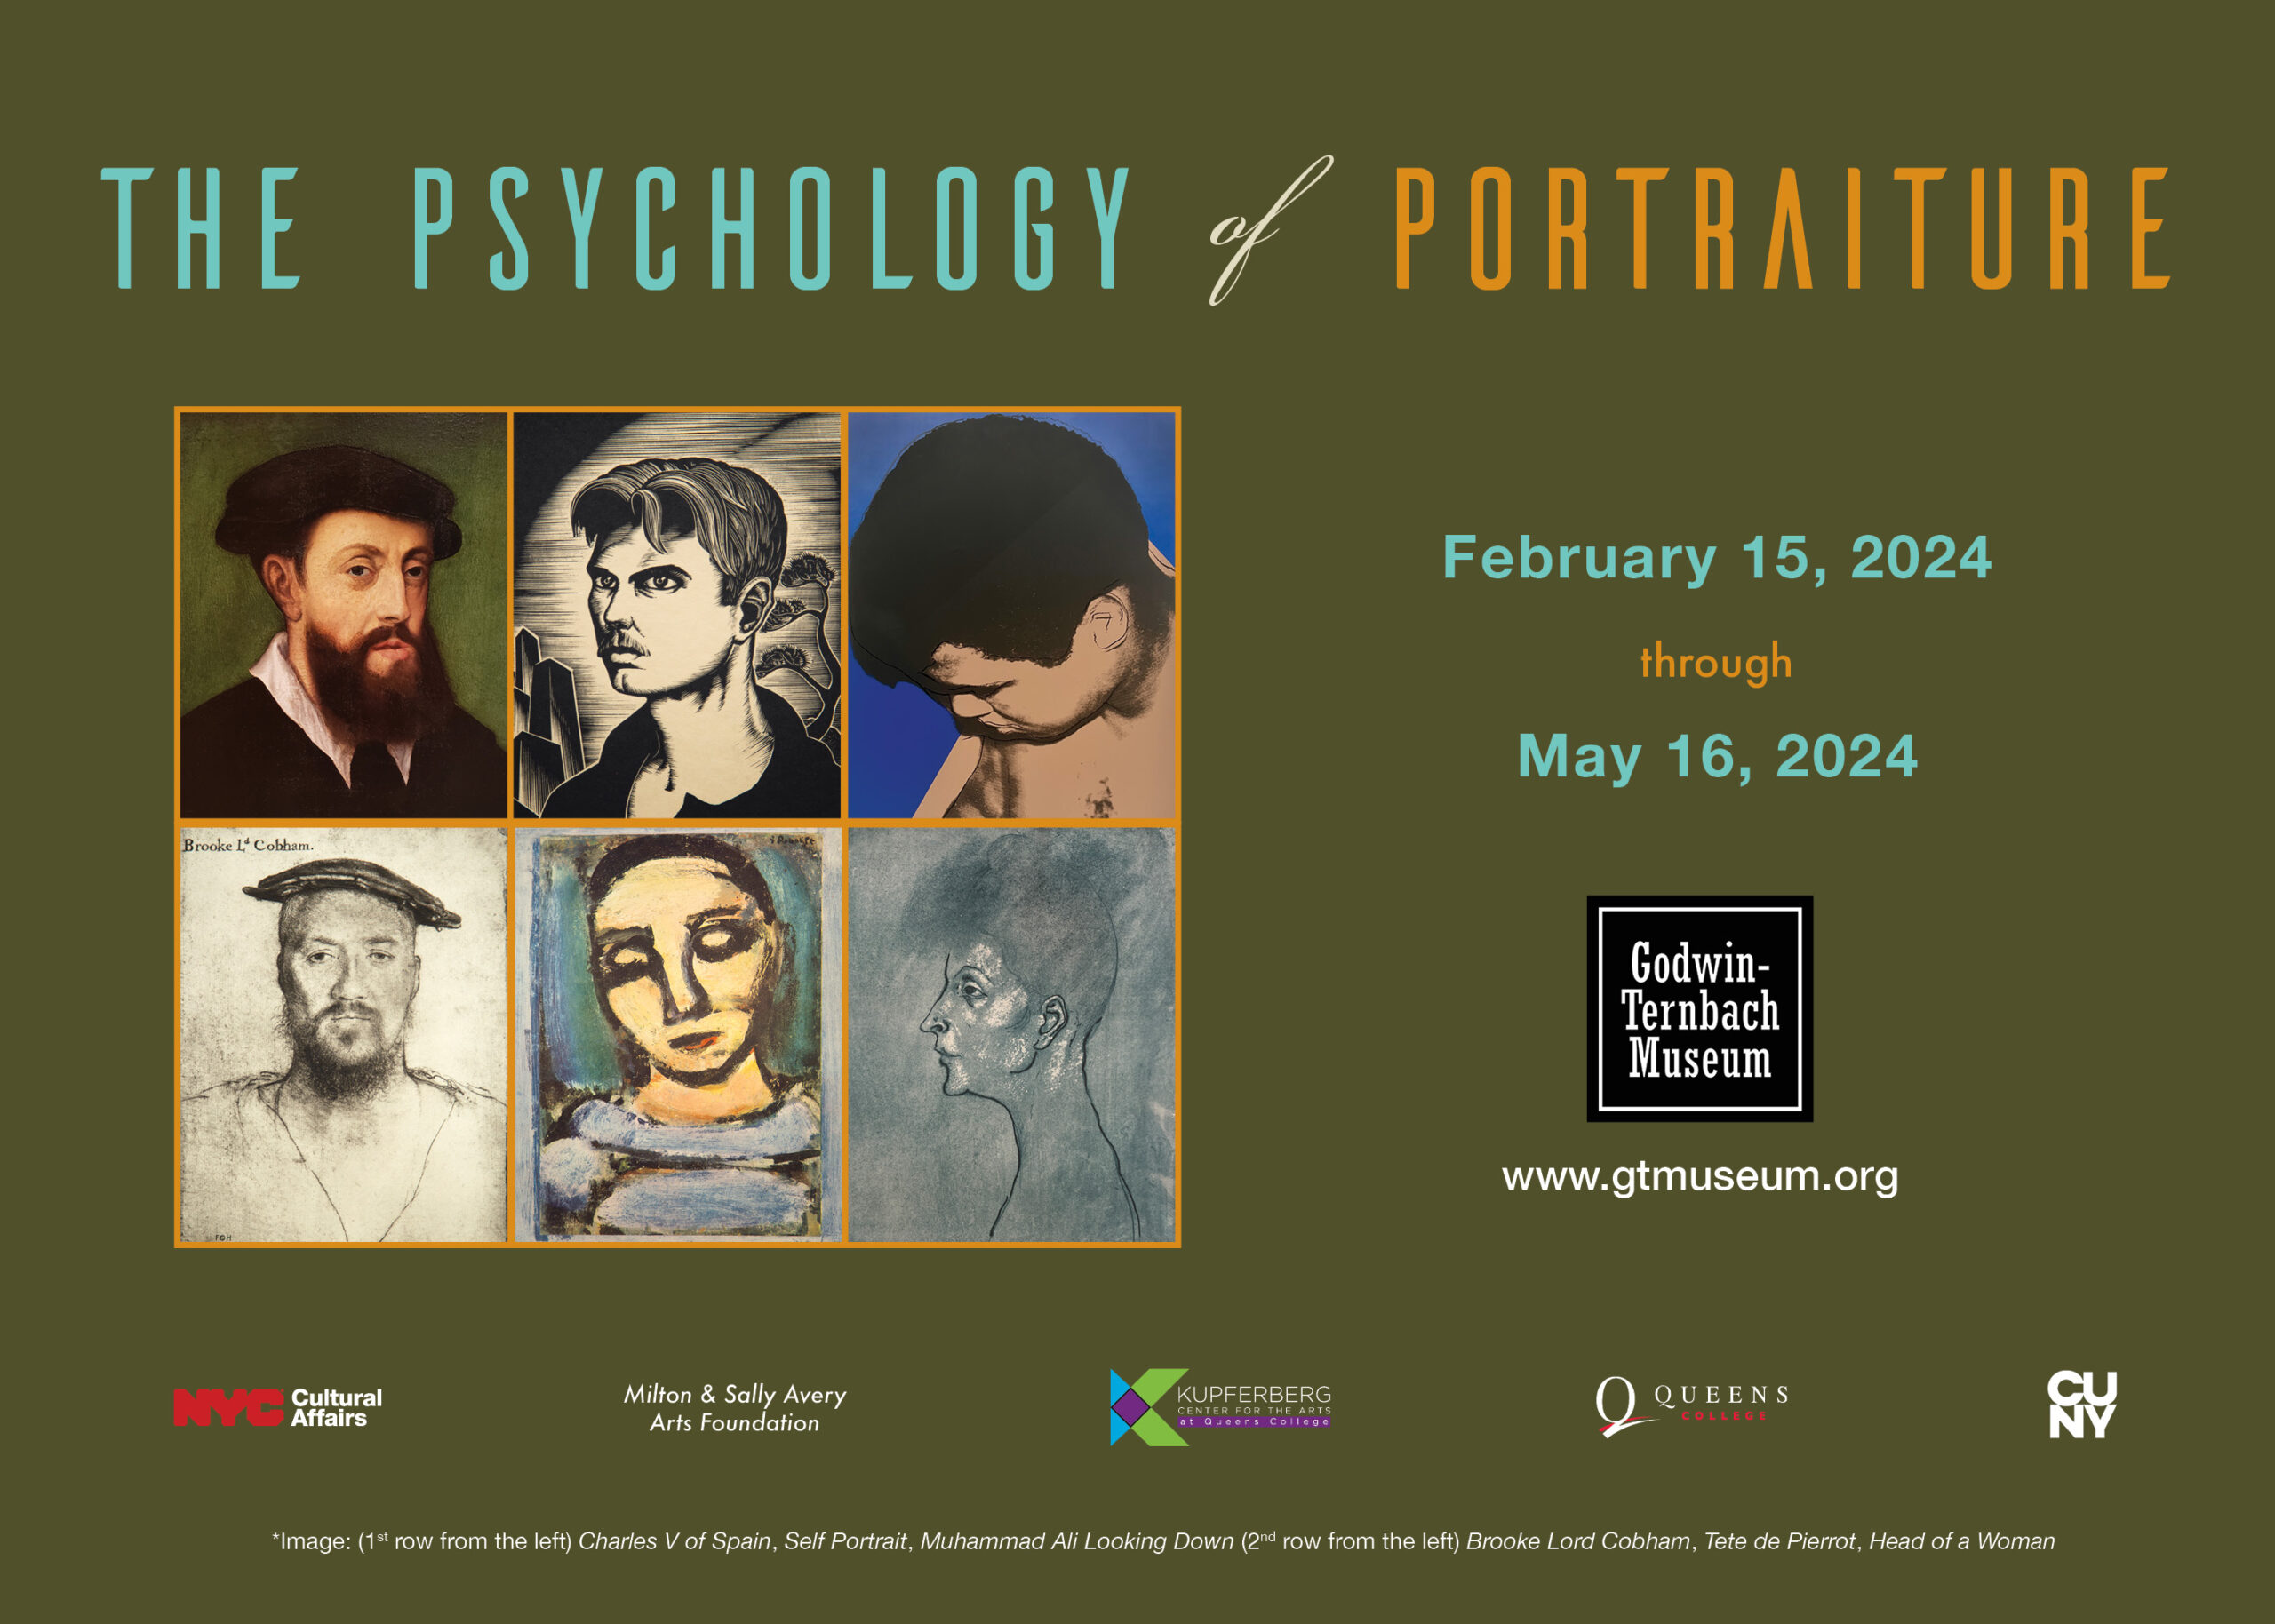 The Psychology of Portraiture webslide